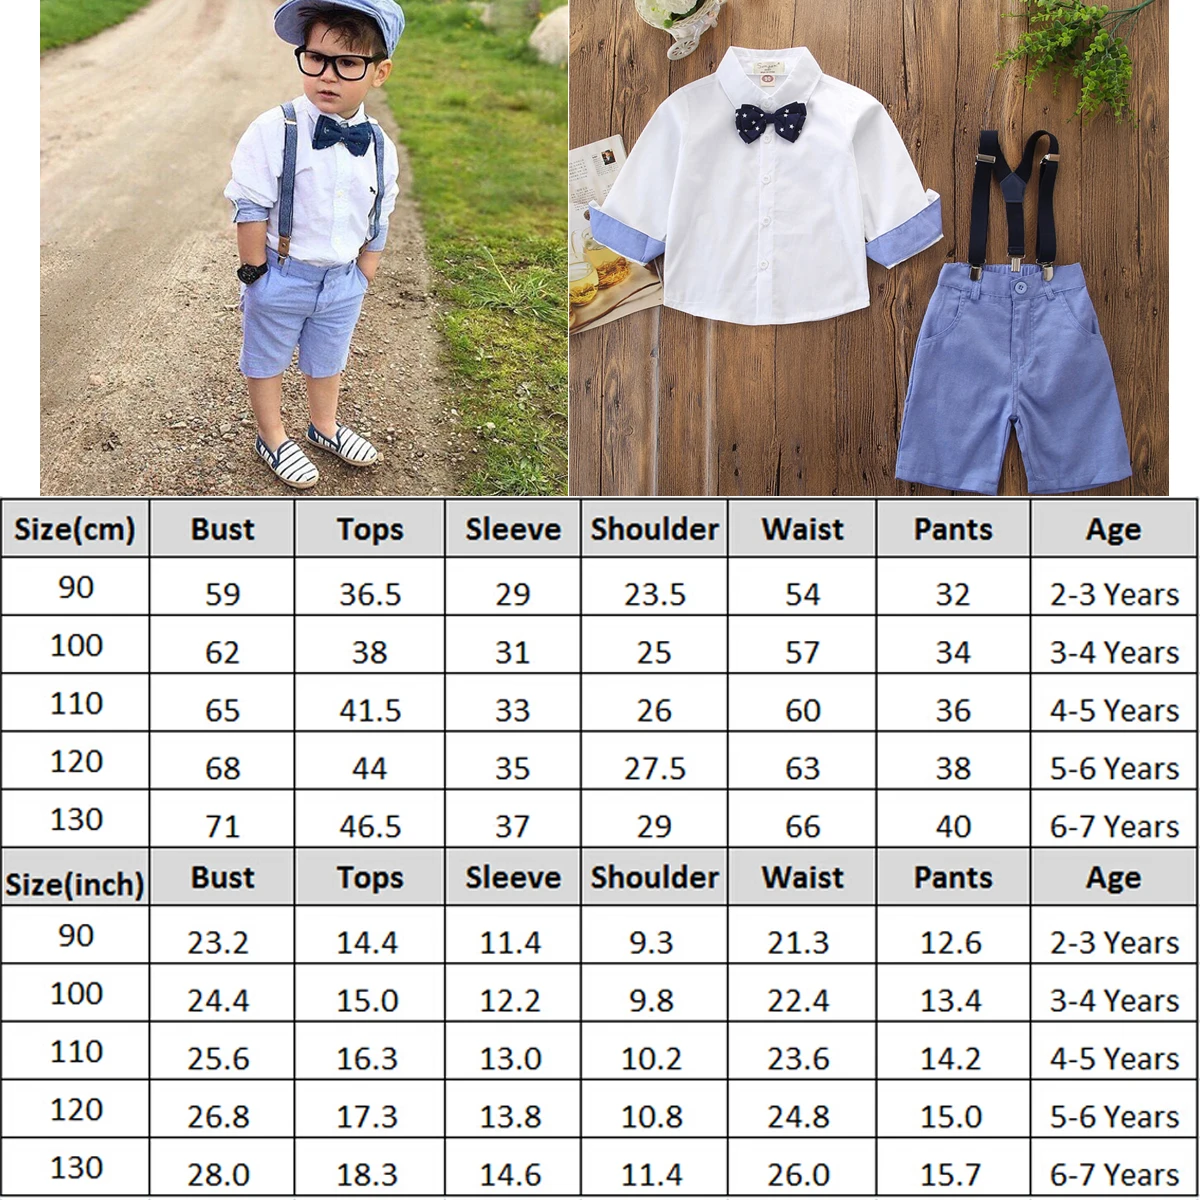 Emmaaby/Модный Элегантный комплект одежды из 2 предметов для маленьких мальчиков, одежда для джентльмена, костюмы, рубашка+ комбинезон, комбинезон+ галстук-бабочка, комплект одежды для мальчиков